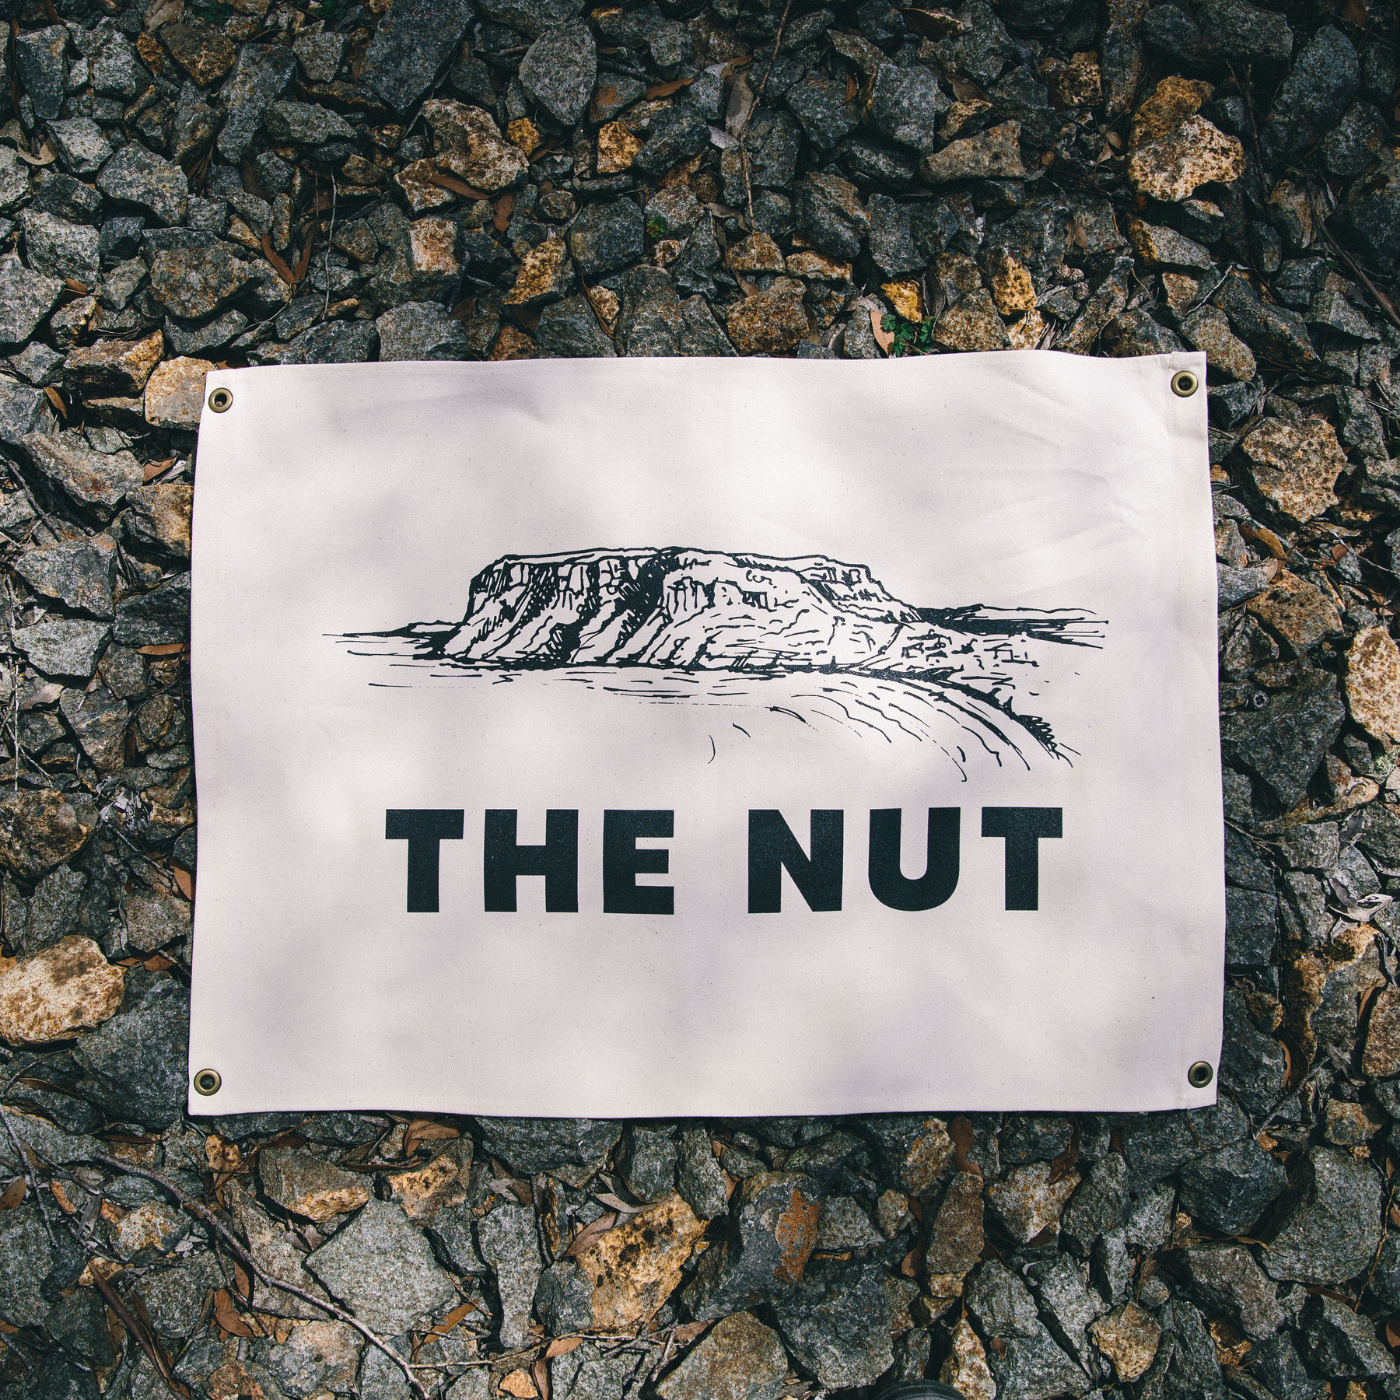 The Tasmanian Flag Company - The Nut